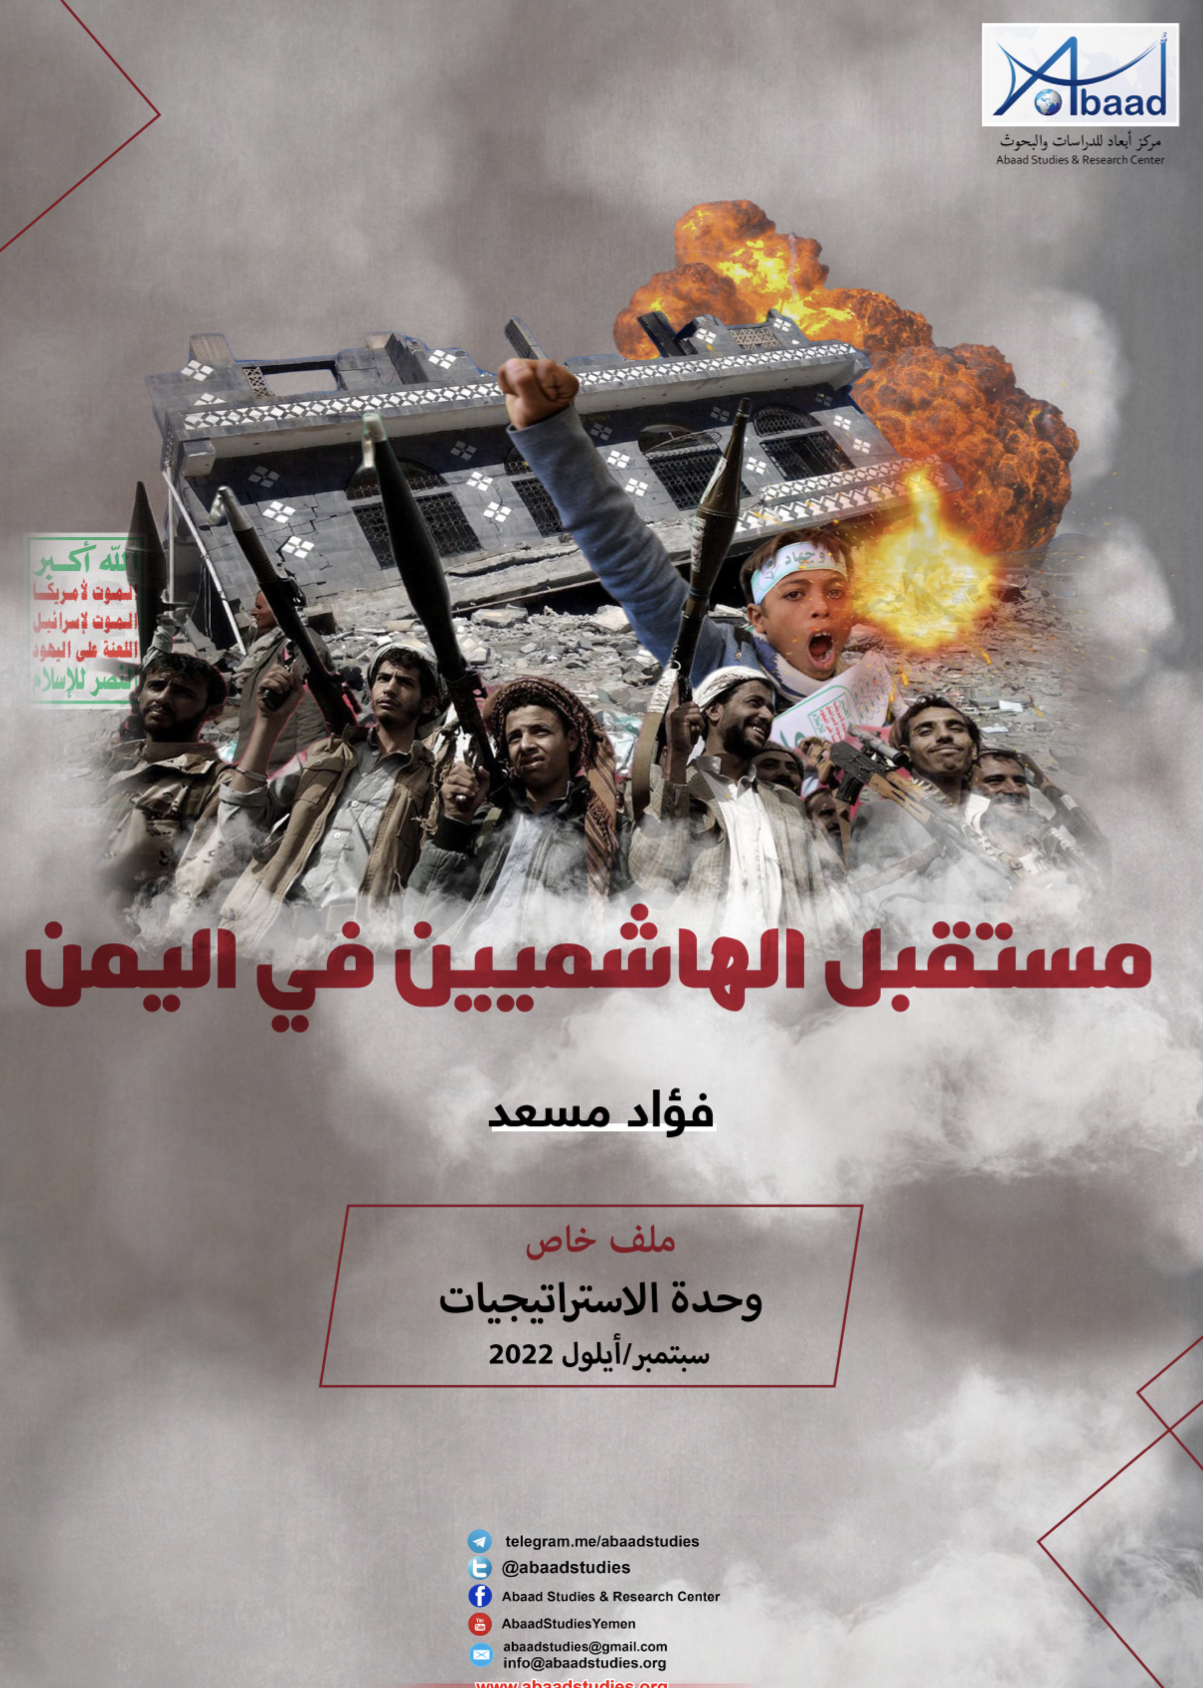  مستقبل الهاشميين في اليمن